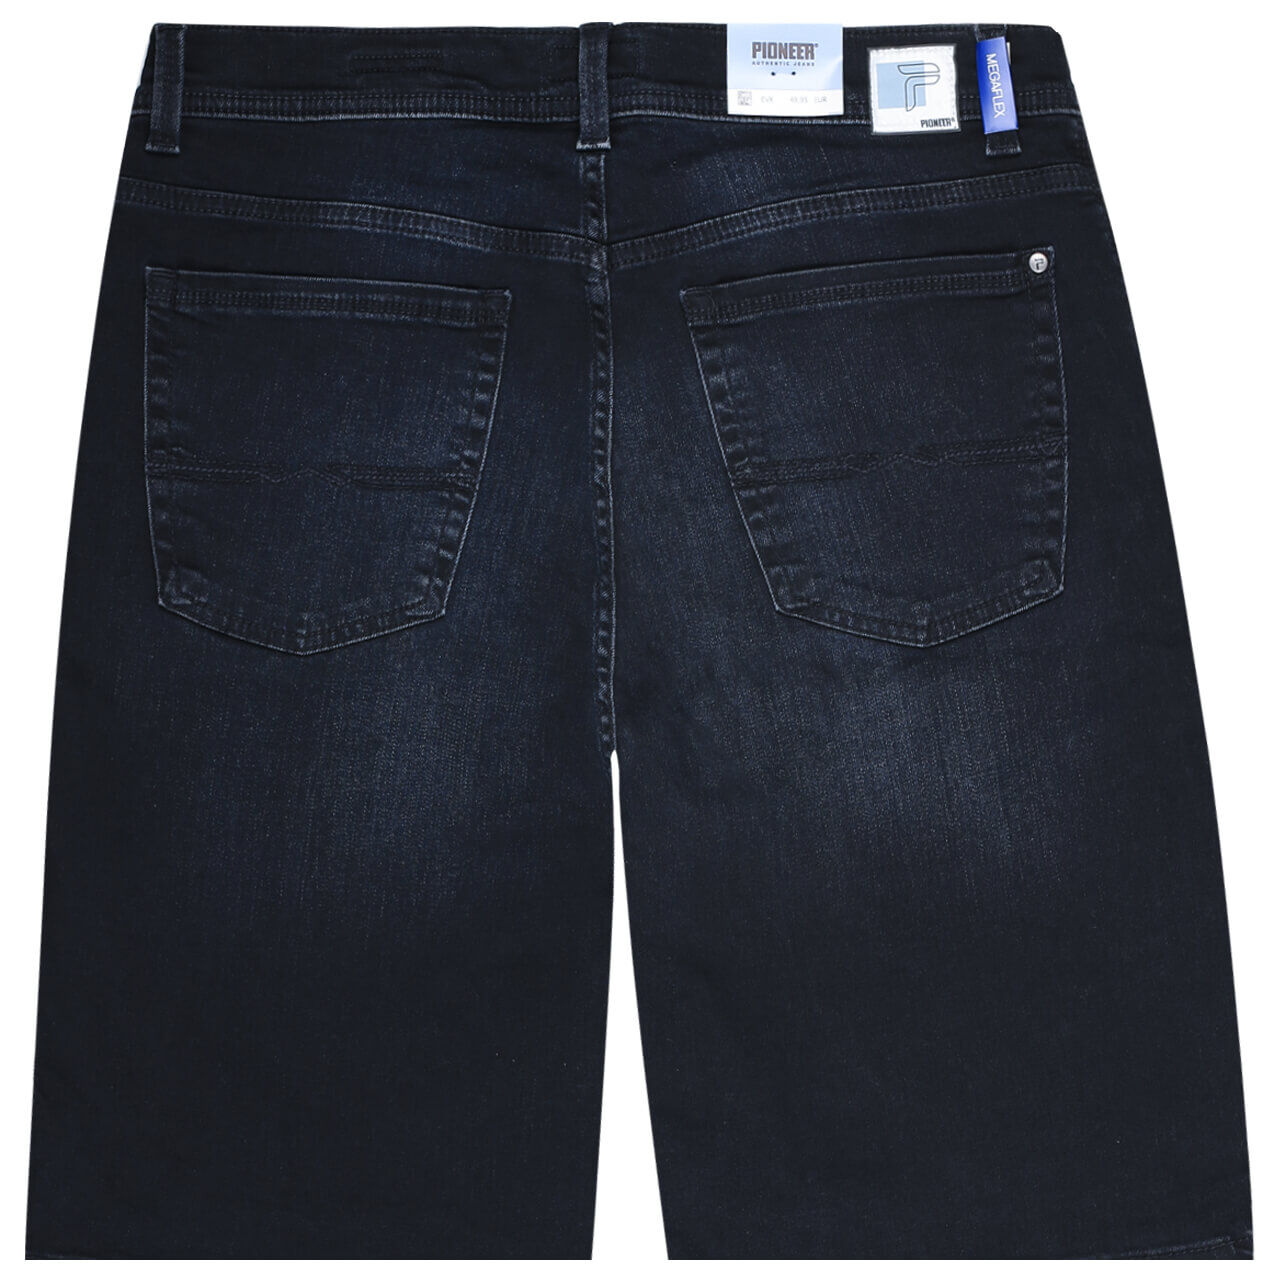 Pioneer Jeans Finn Megaflex Bermuda für Herren in Blauschwarz angewaschen, FarbNr.: 6804